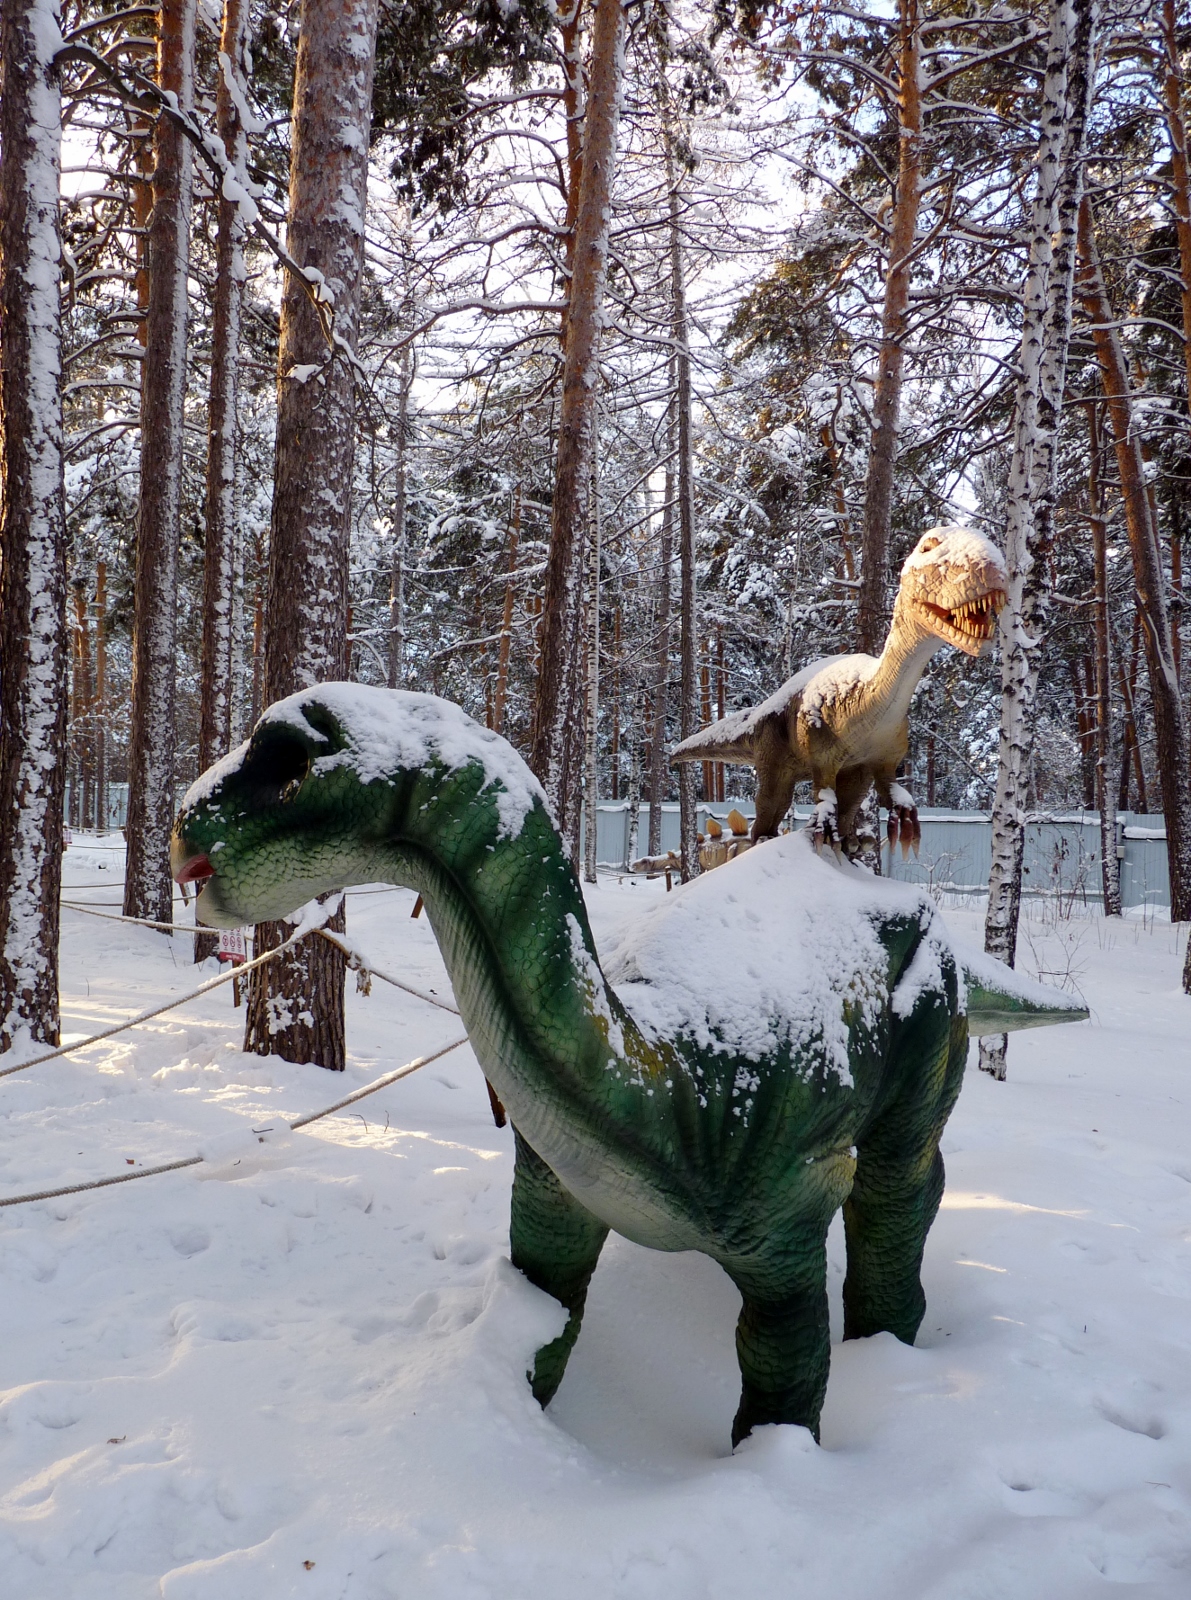 Ермолаева Елизавета, г. Челябинск. "Утро в сосновом лесу", номинация "Ледниковый период в парке динозавров"